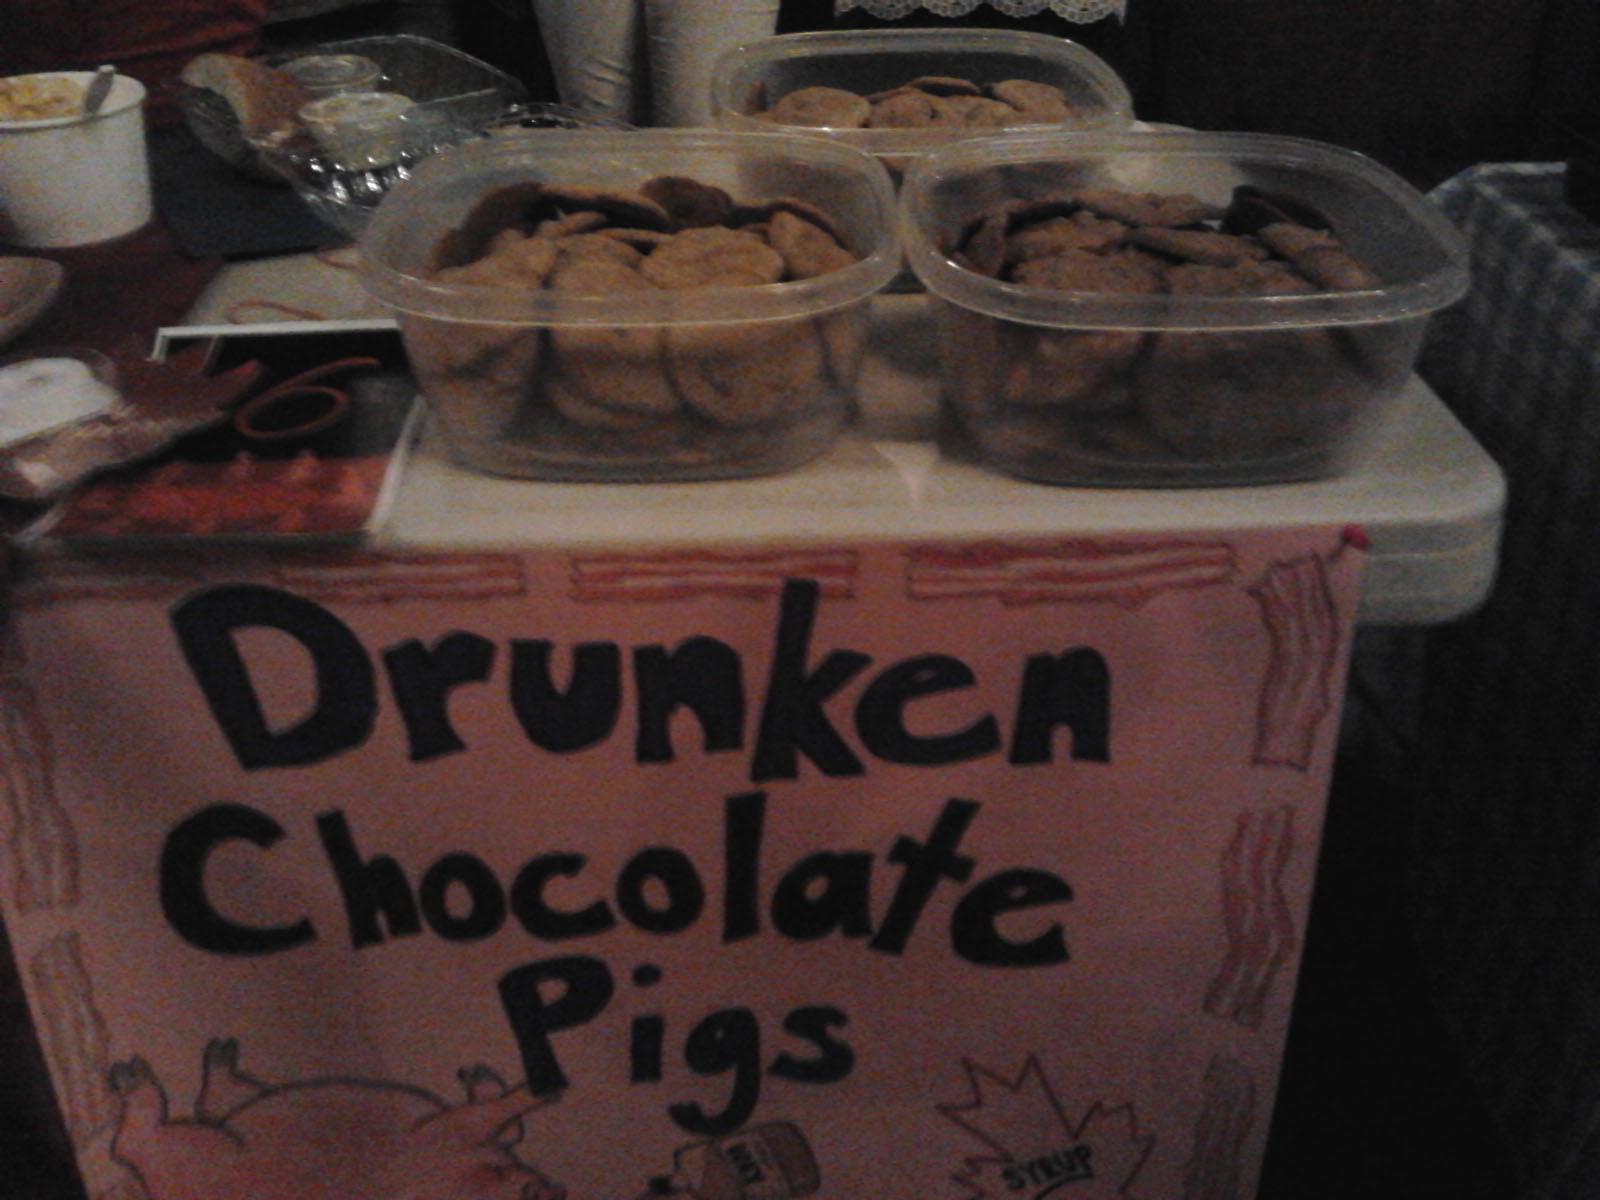 drunken-choco-pigs-cookie.jpg